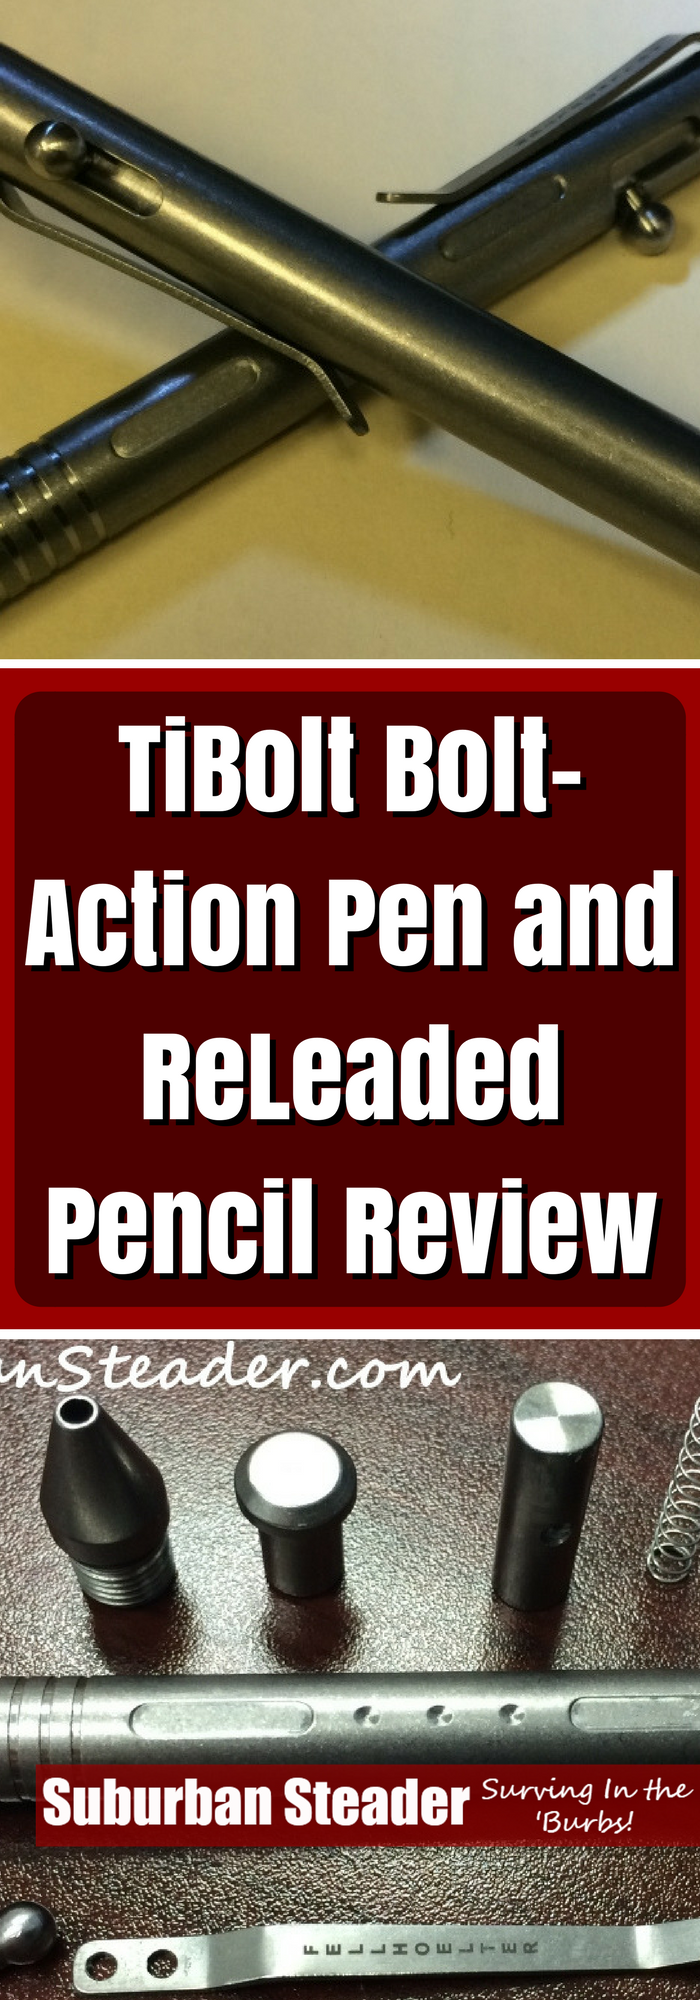 TiBolt Pen & TiBolt ReLeaded Pencil Review